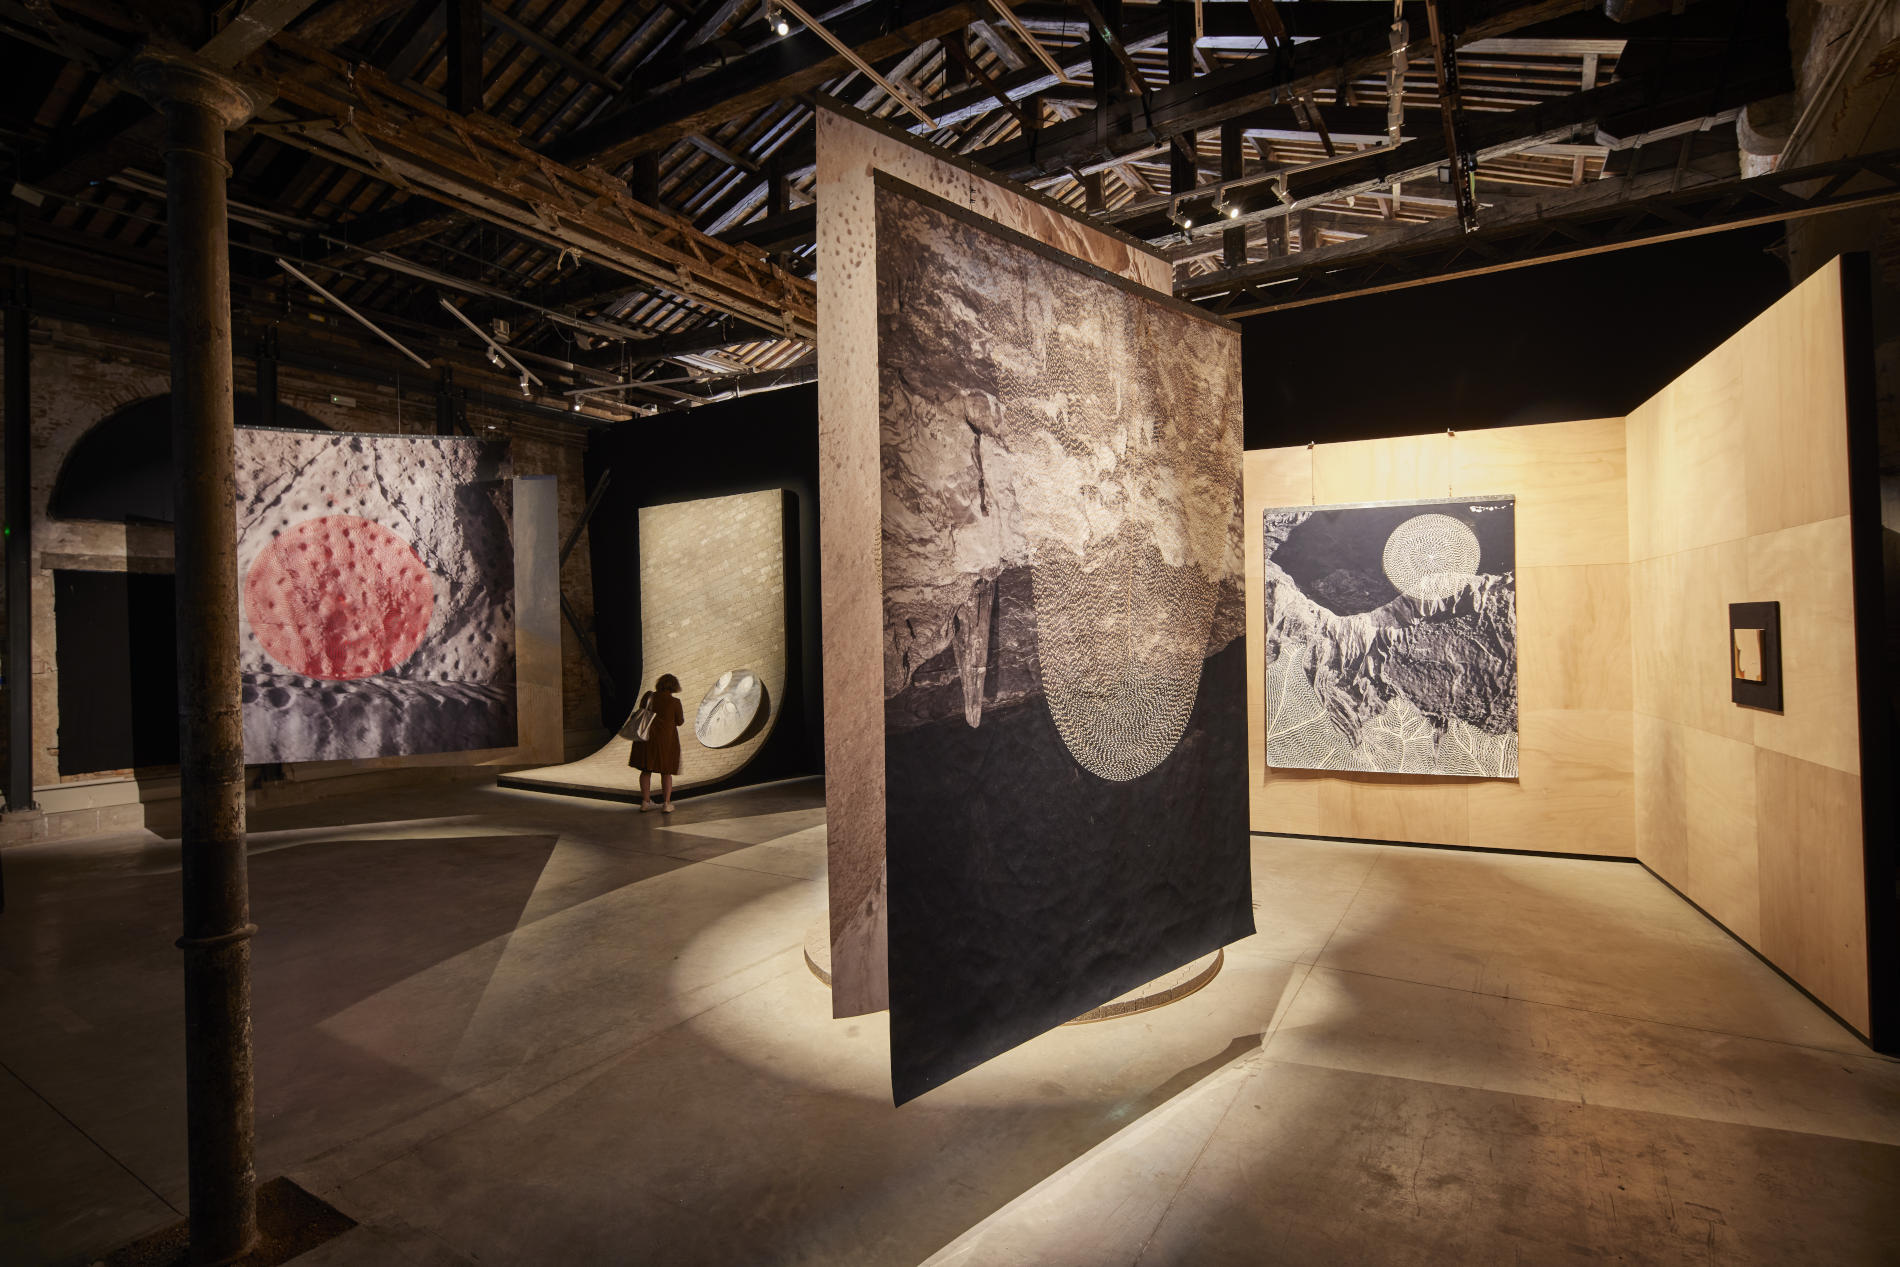 Il debutto dell'Oman alla Biennale di Venezia. In mostra opere di tre generazioni di artisti